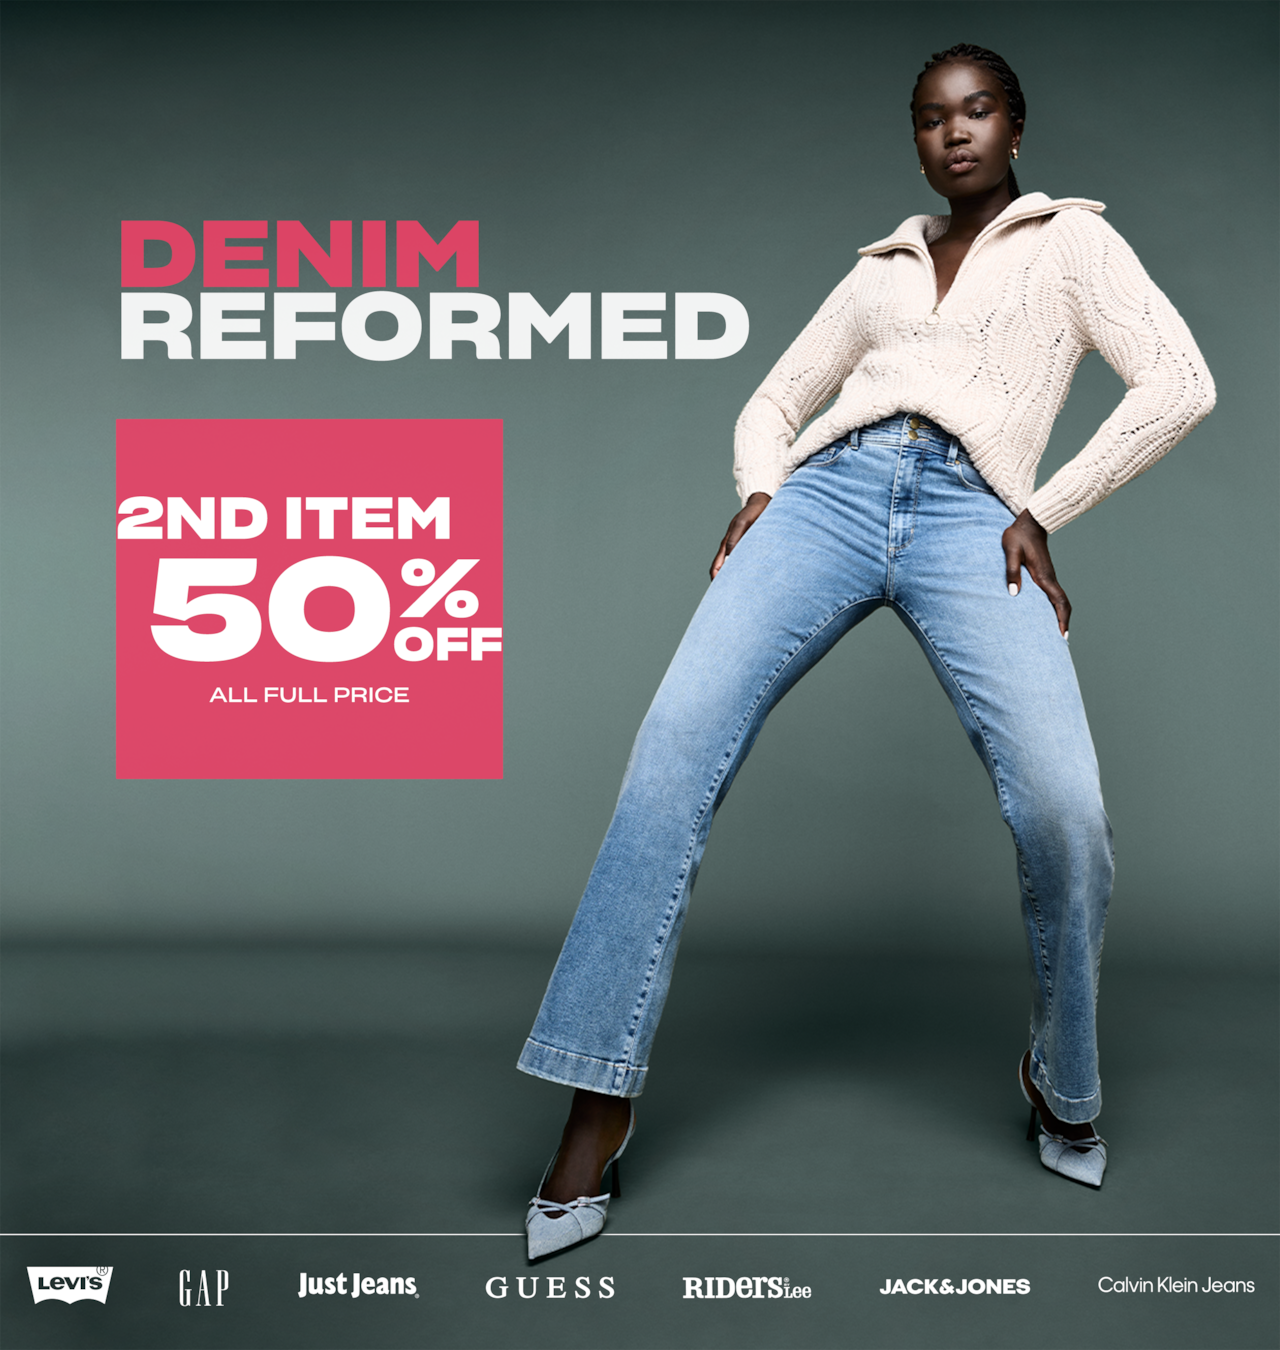 Denim Reformed. 50% Off All Full Price